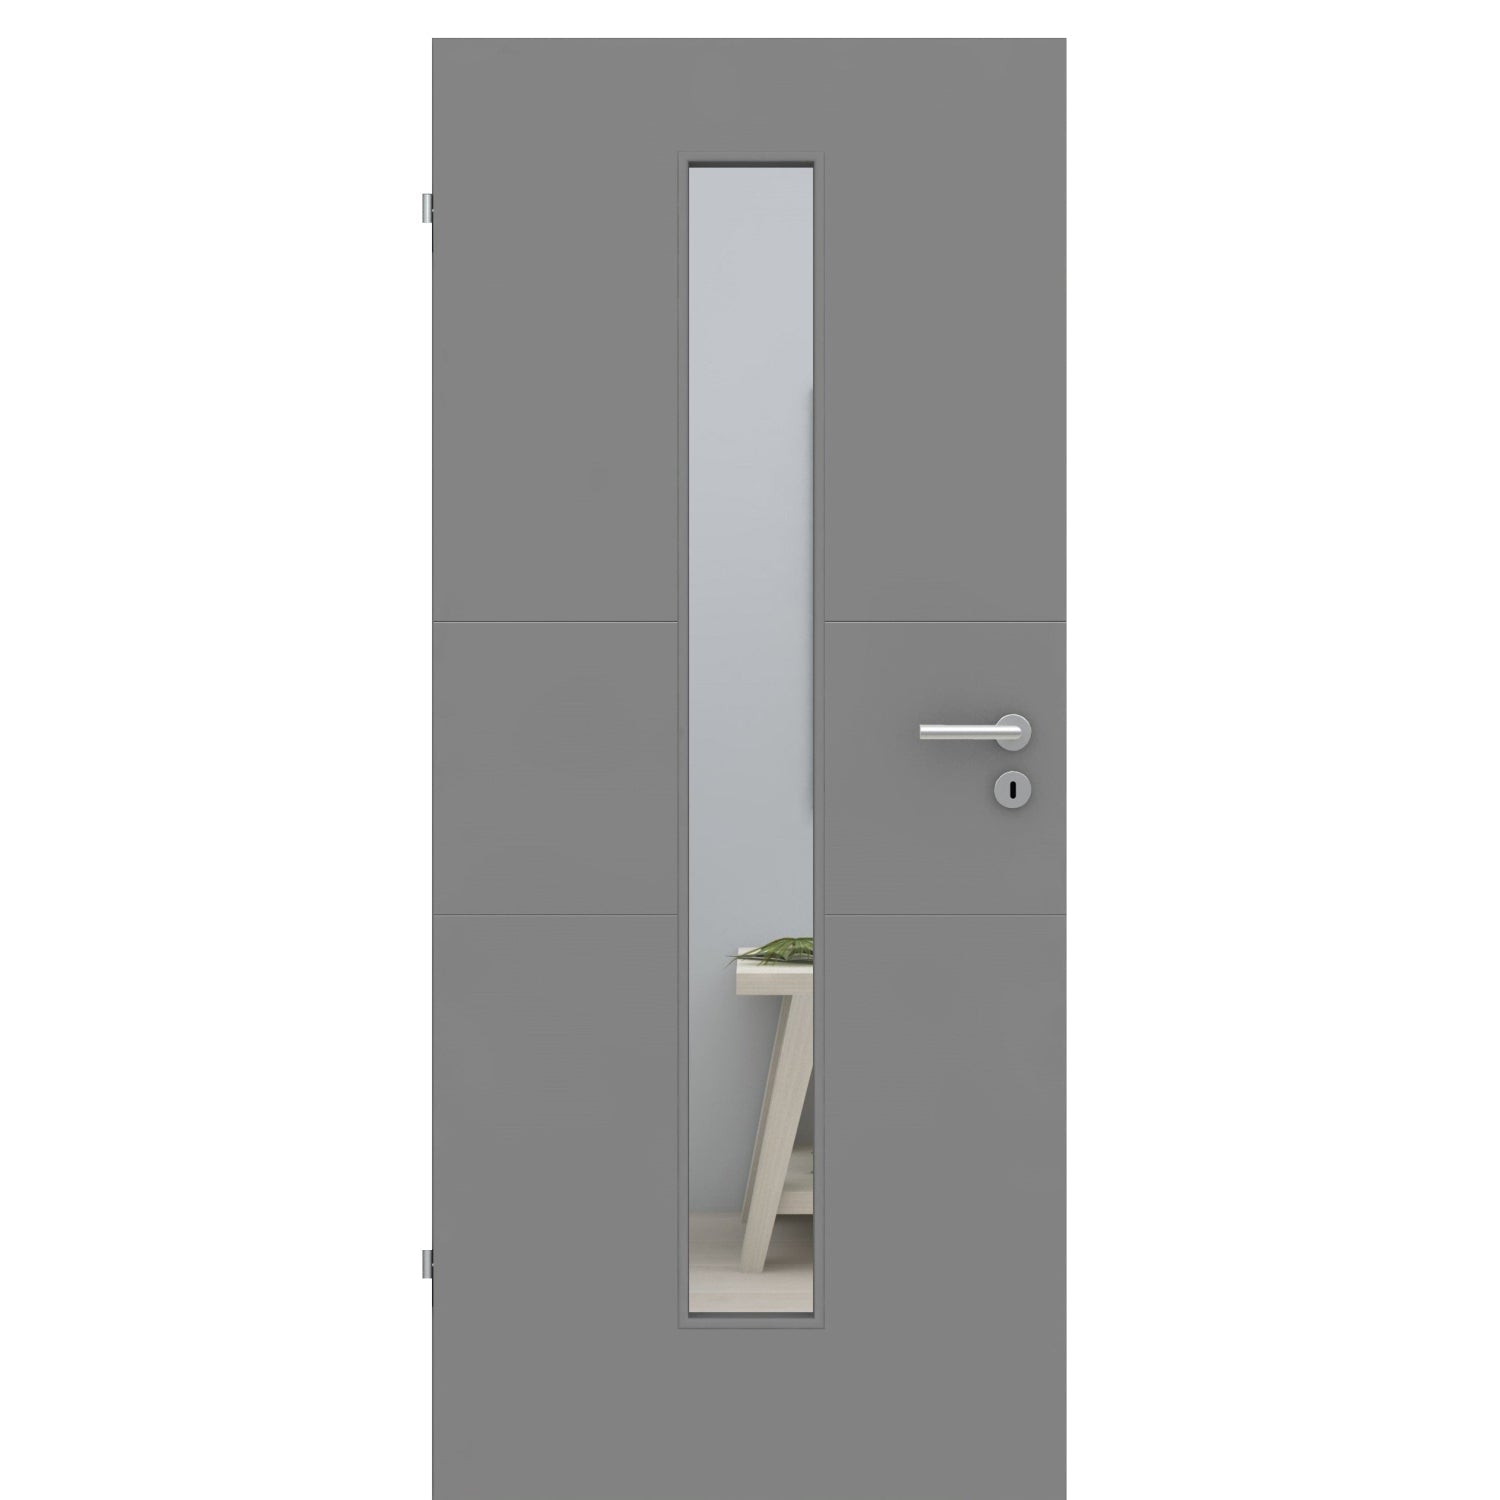 Zimmertür mit Lichtausschnitt grau 2 Rillen quer Designkante - Modell Designtür Q27LAM